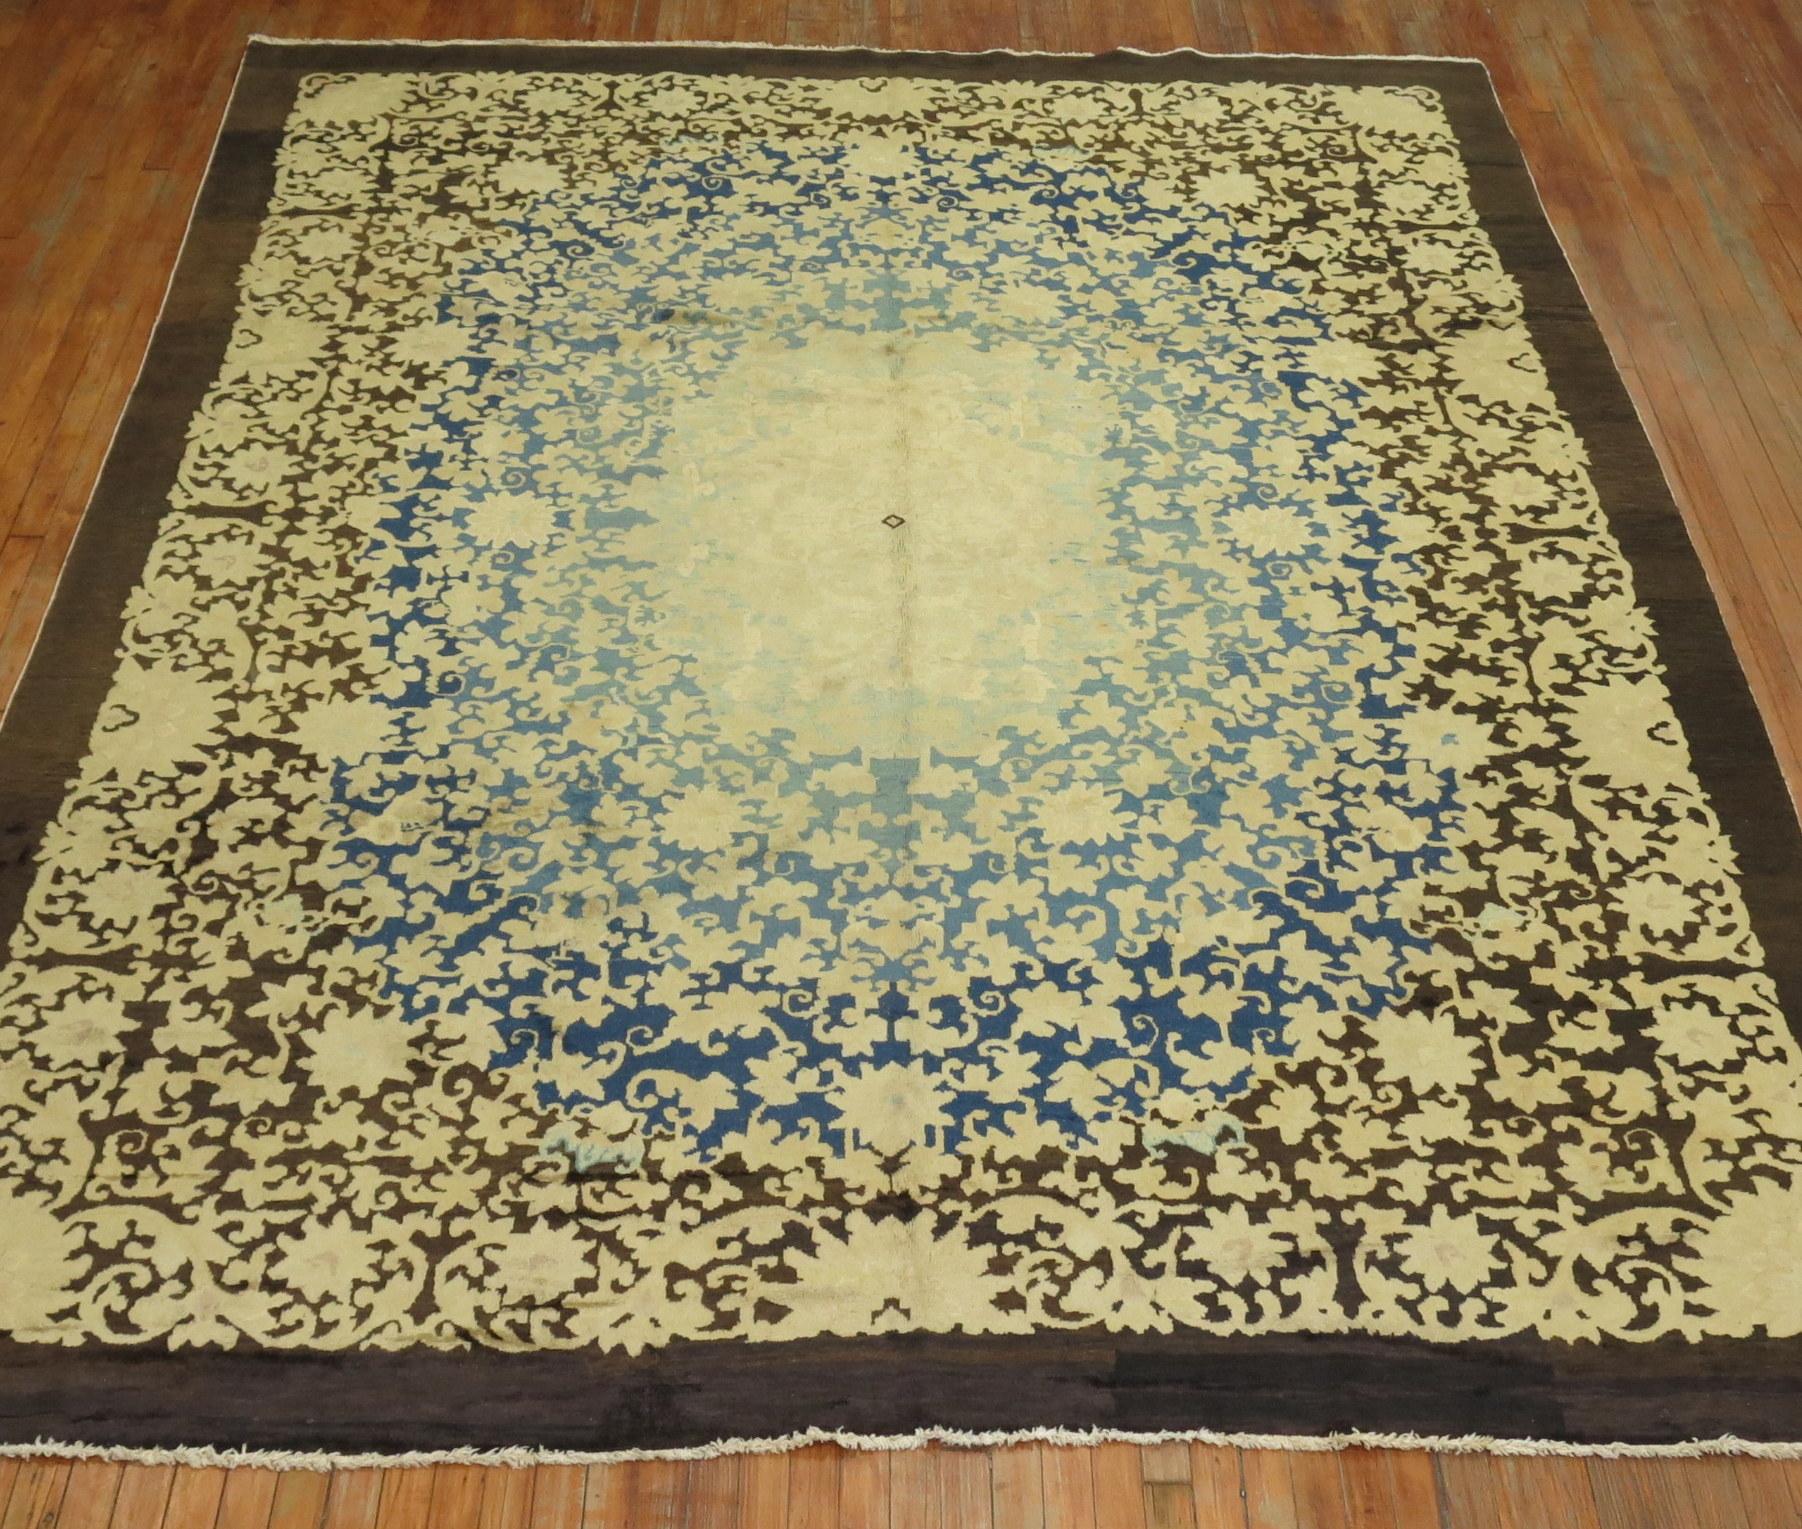 ein chinesischer Teppich aus dem frühen 20. Jahrhundert mit einem Blumenmuster in Creme, Blau, Gelb und Braun

Maße: 8'11'' x 11'5''.